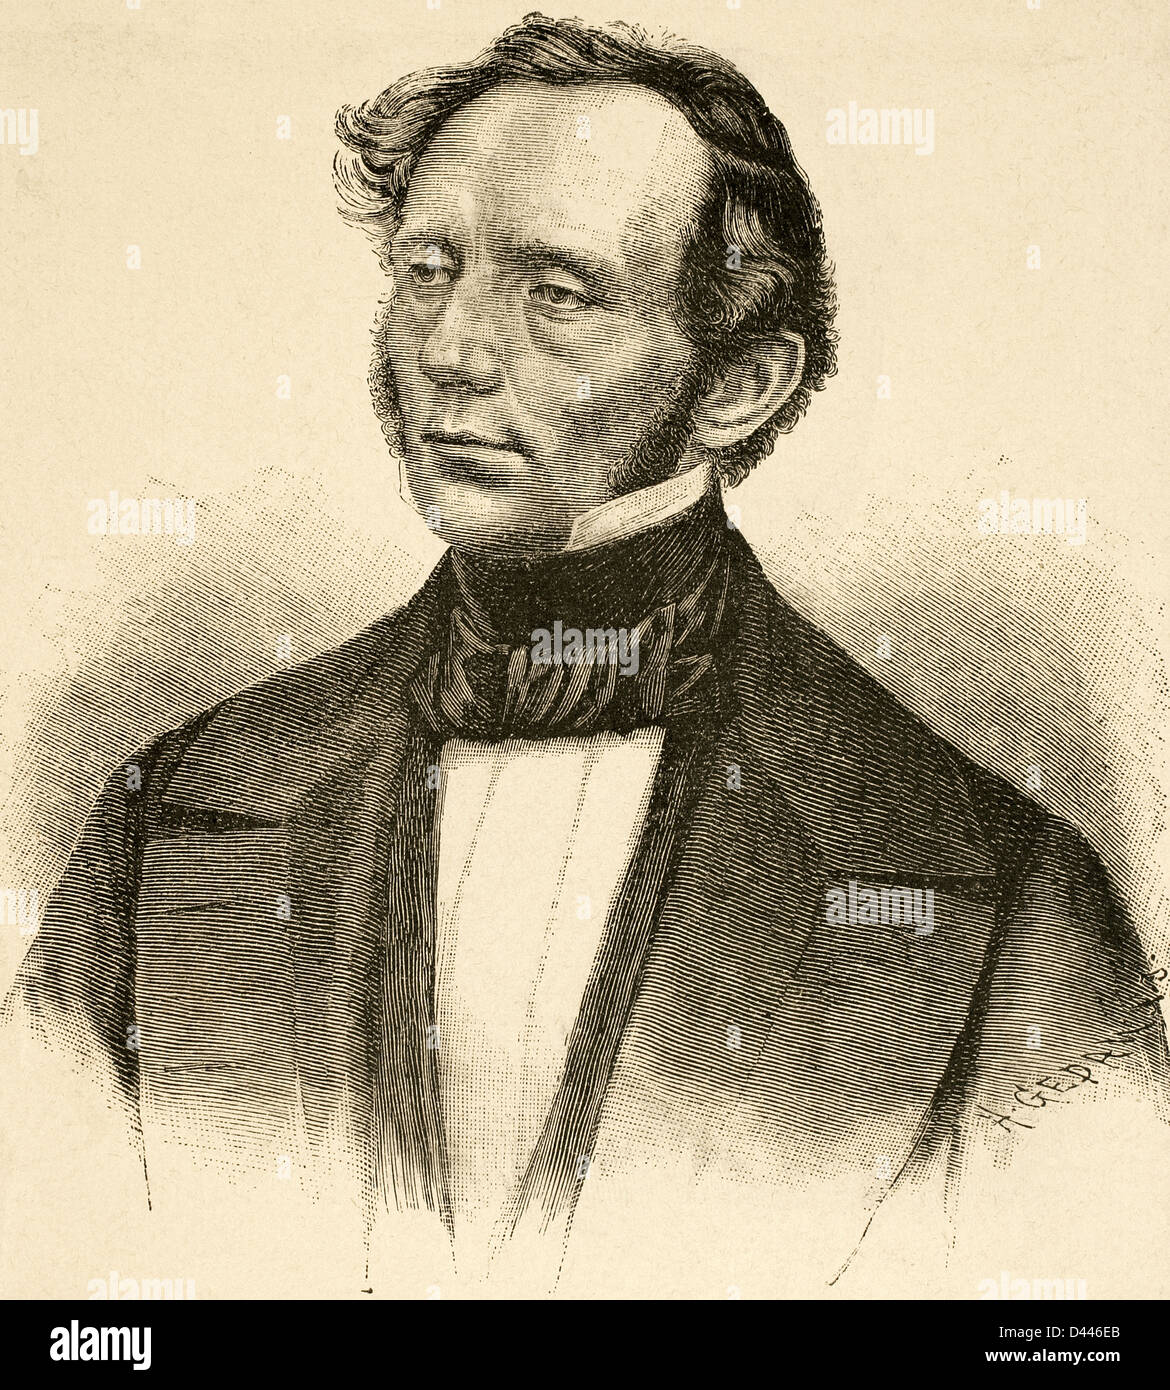 Hermann von Beckerath (1801-1870). Politicien prussien et banquier. La gravure à l'histoire du monde, 1885. Banque D'Images